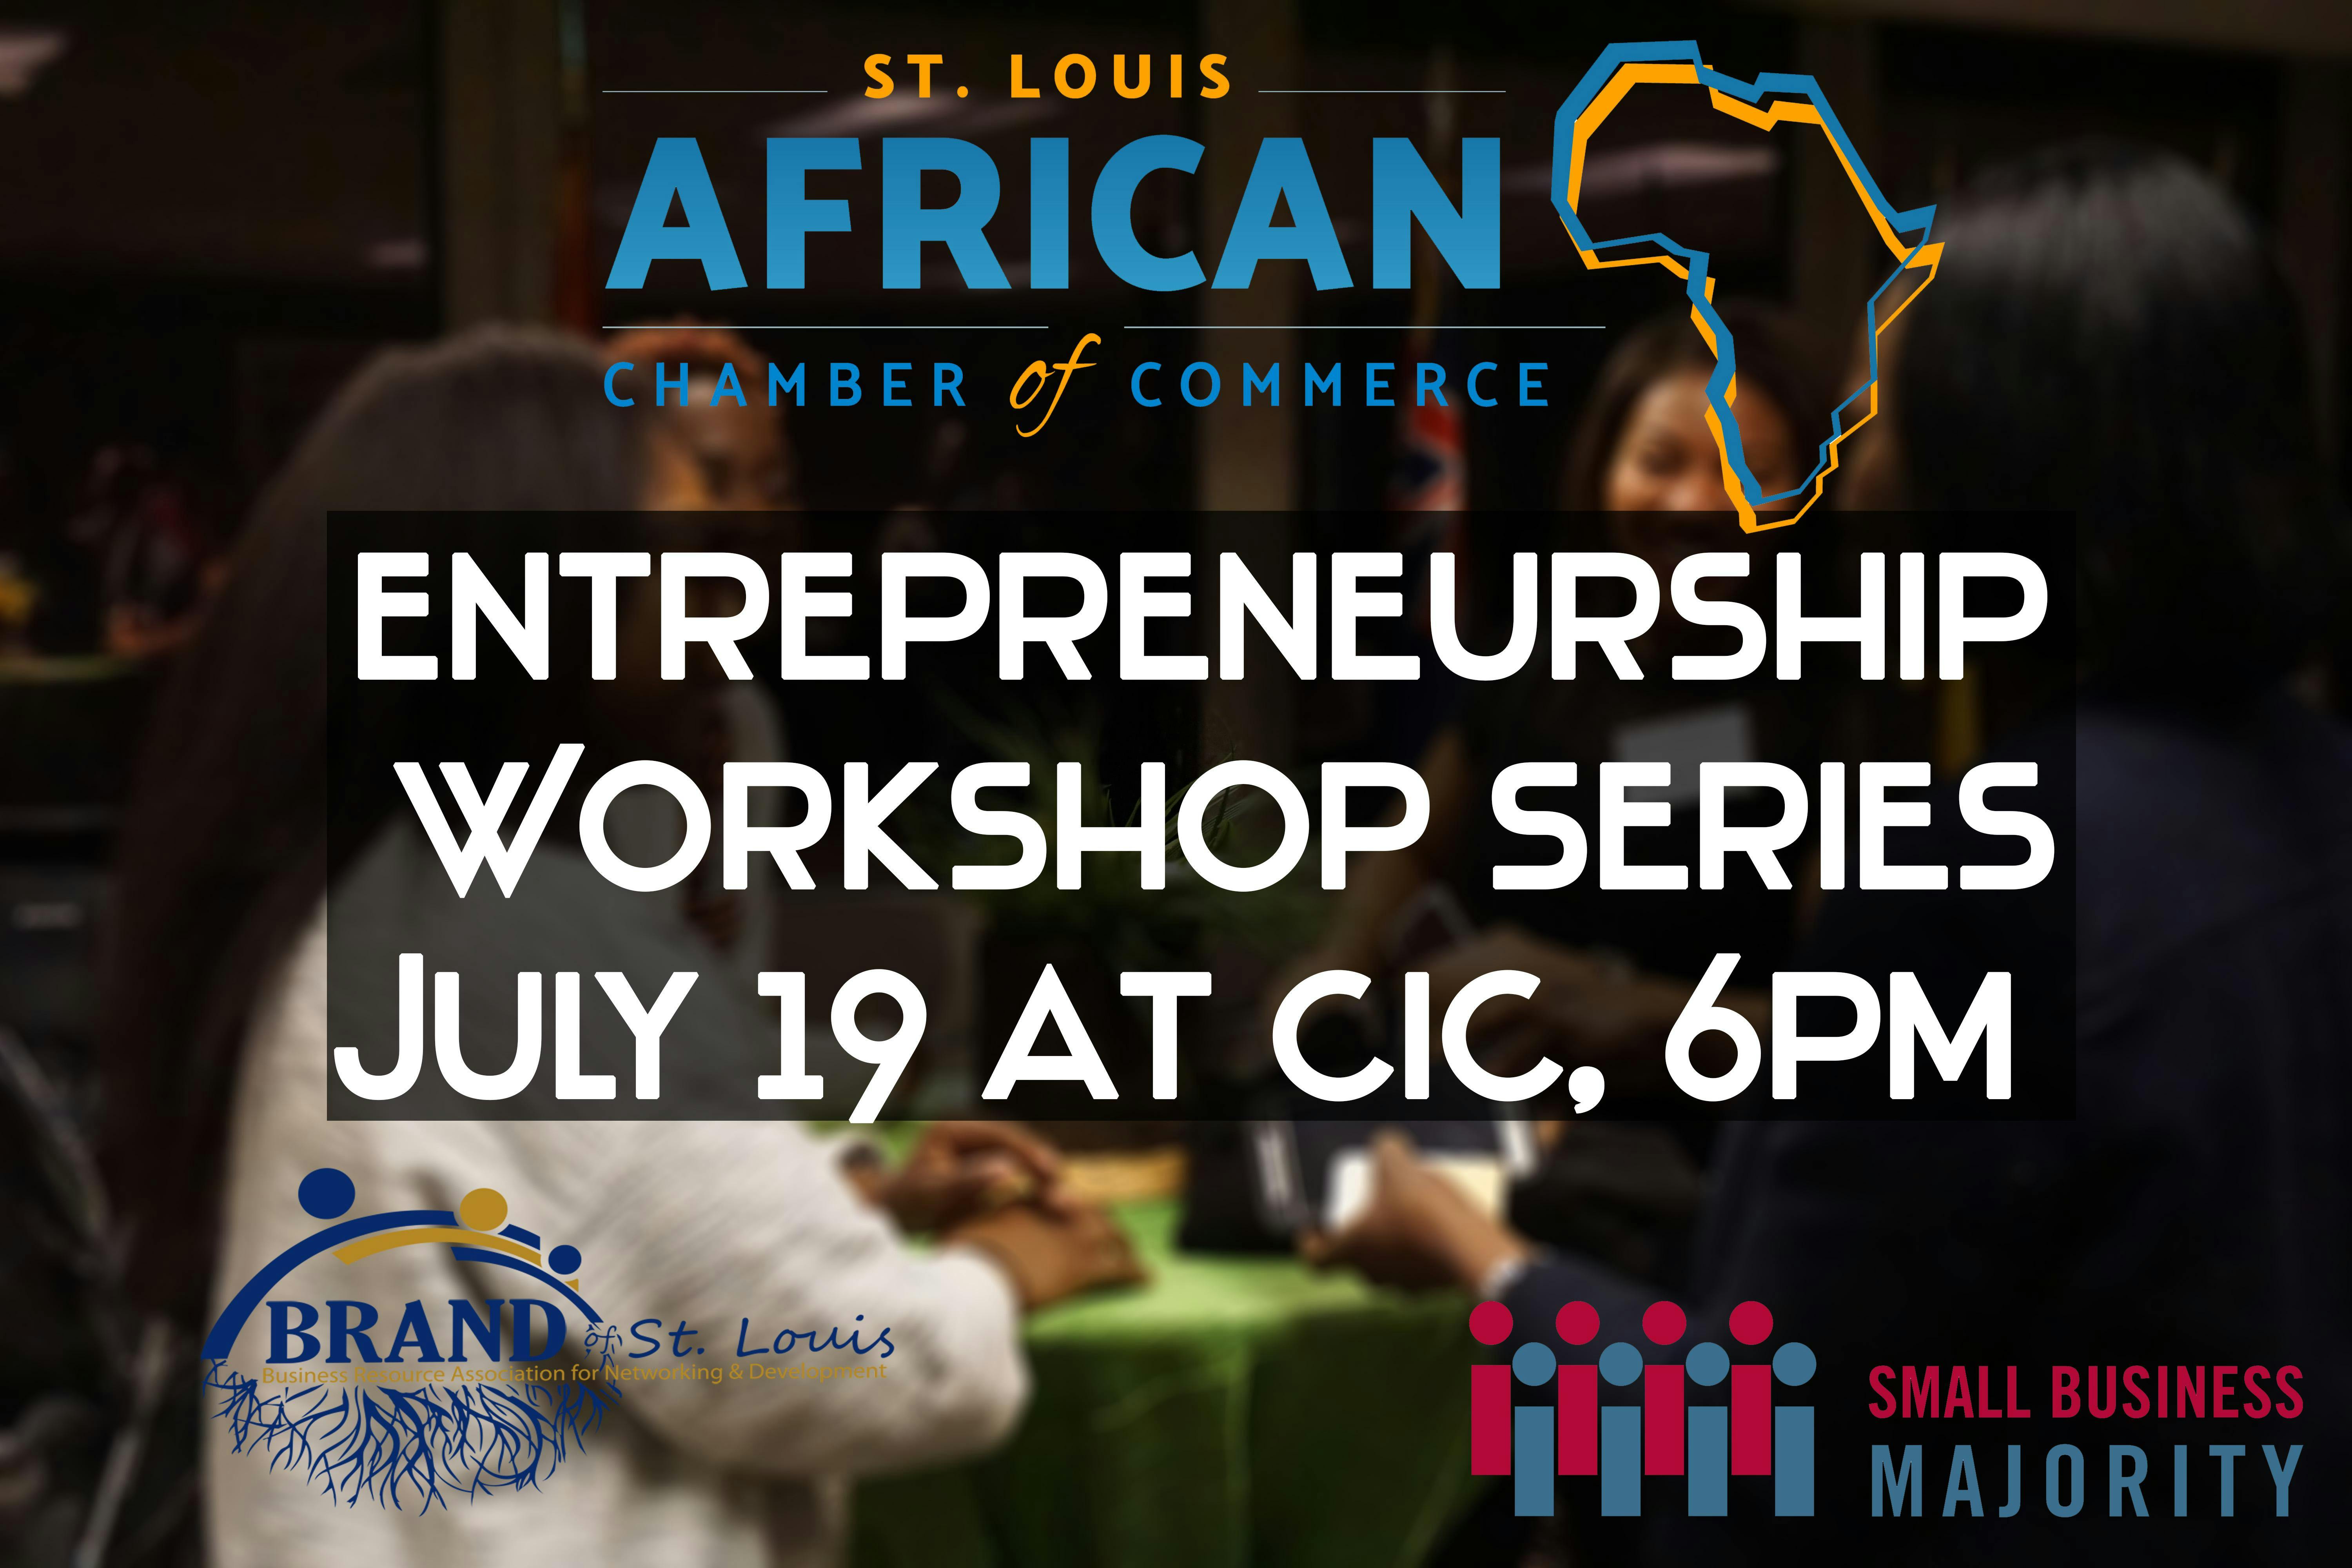 African Chamber of Commerce STL Entrepreneurship Workshop Series 